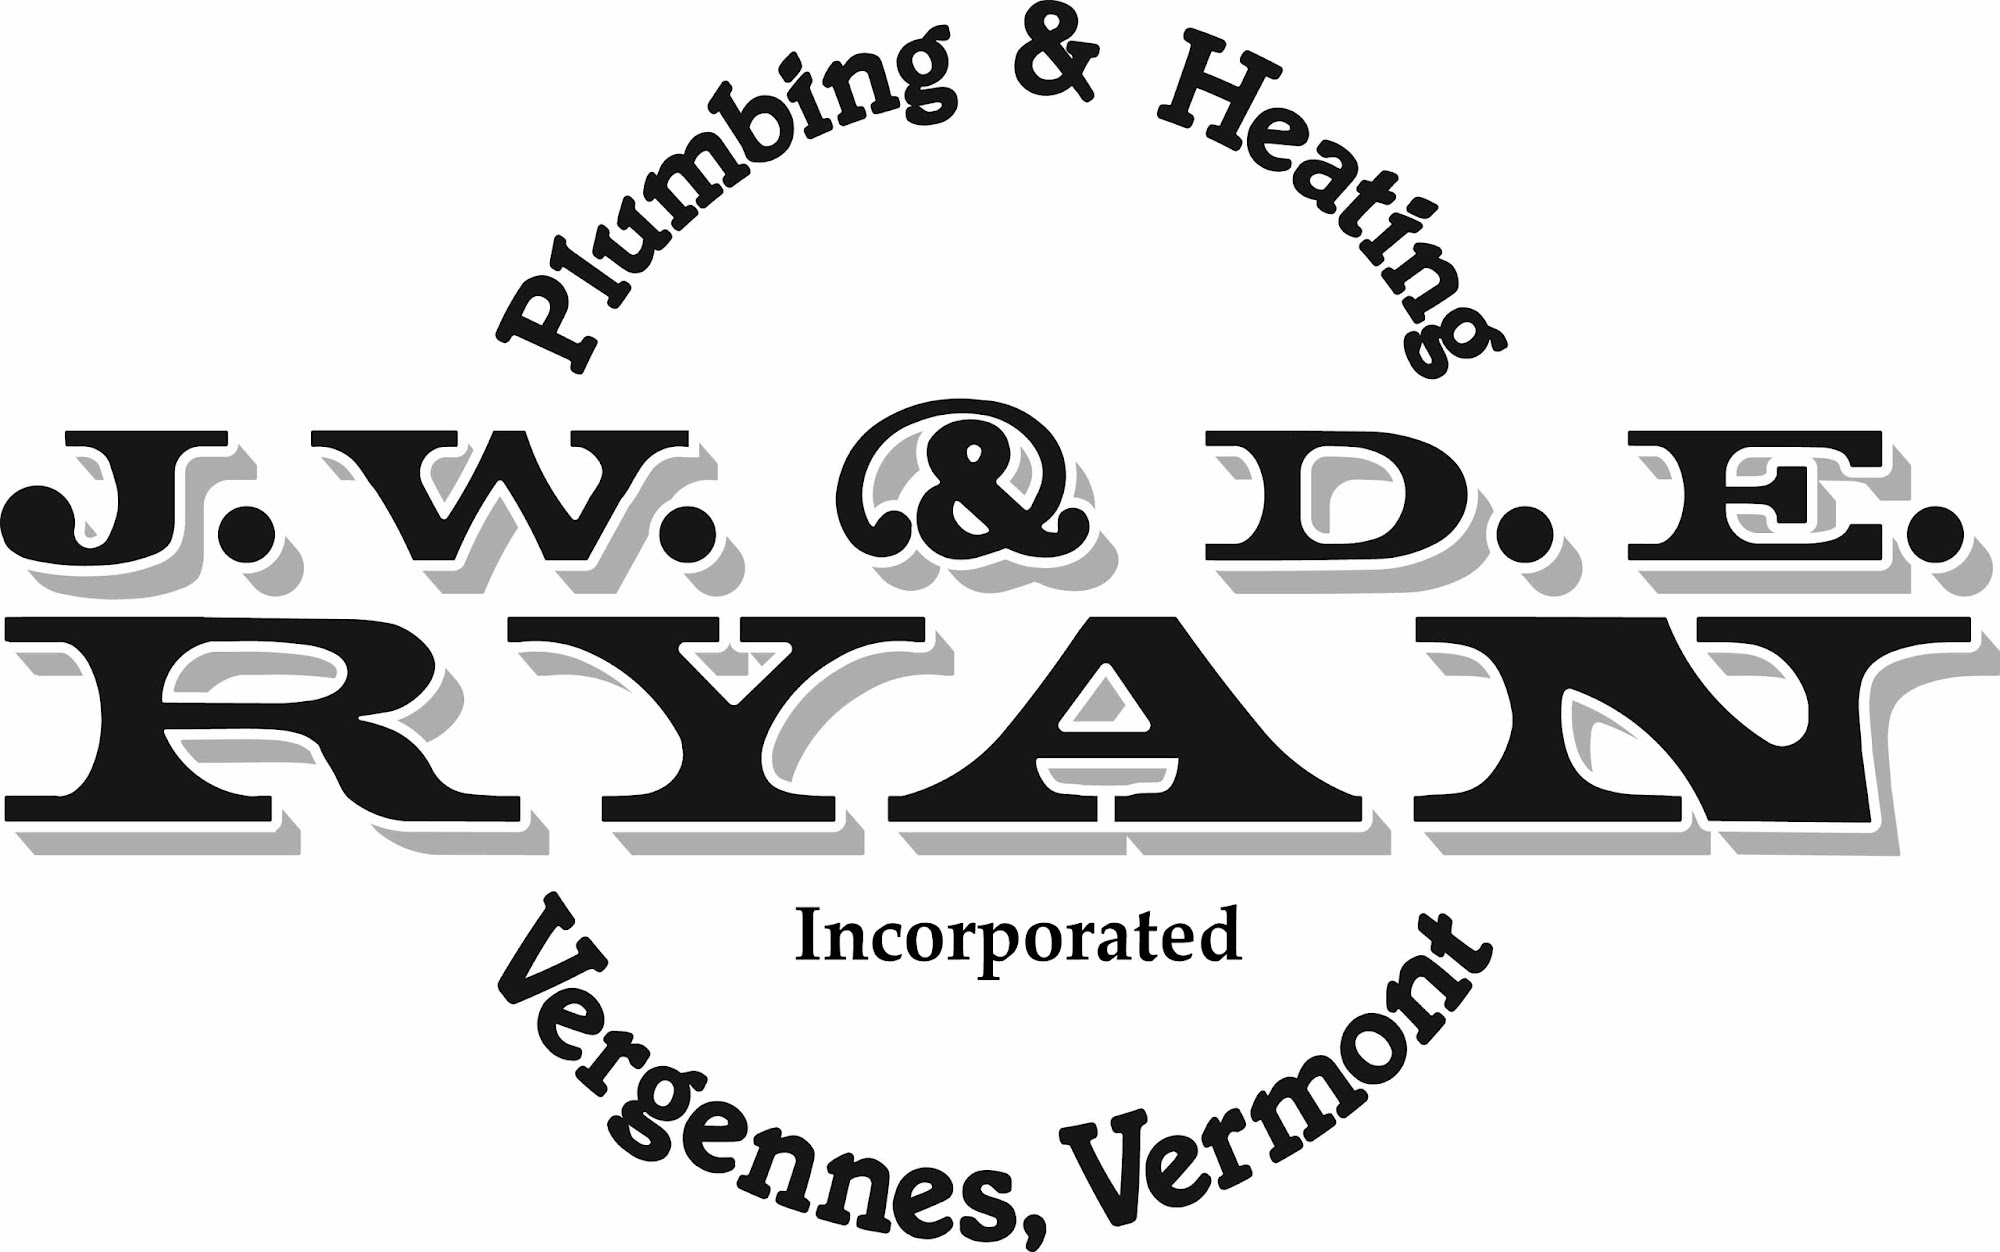 J.W.&D.E. Ryan 155 Main St, Vergennes Vermont 05491